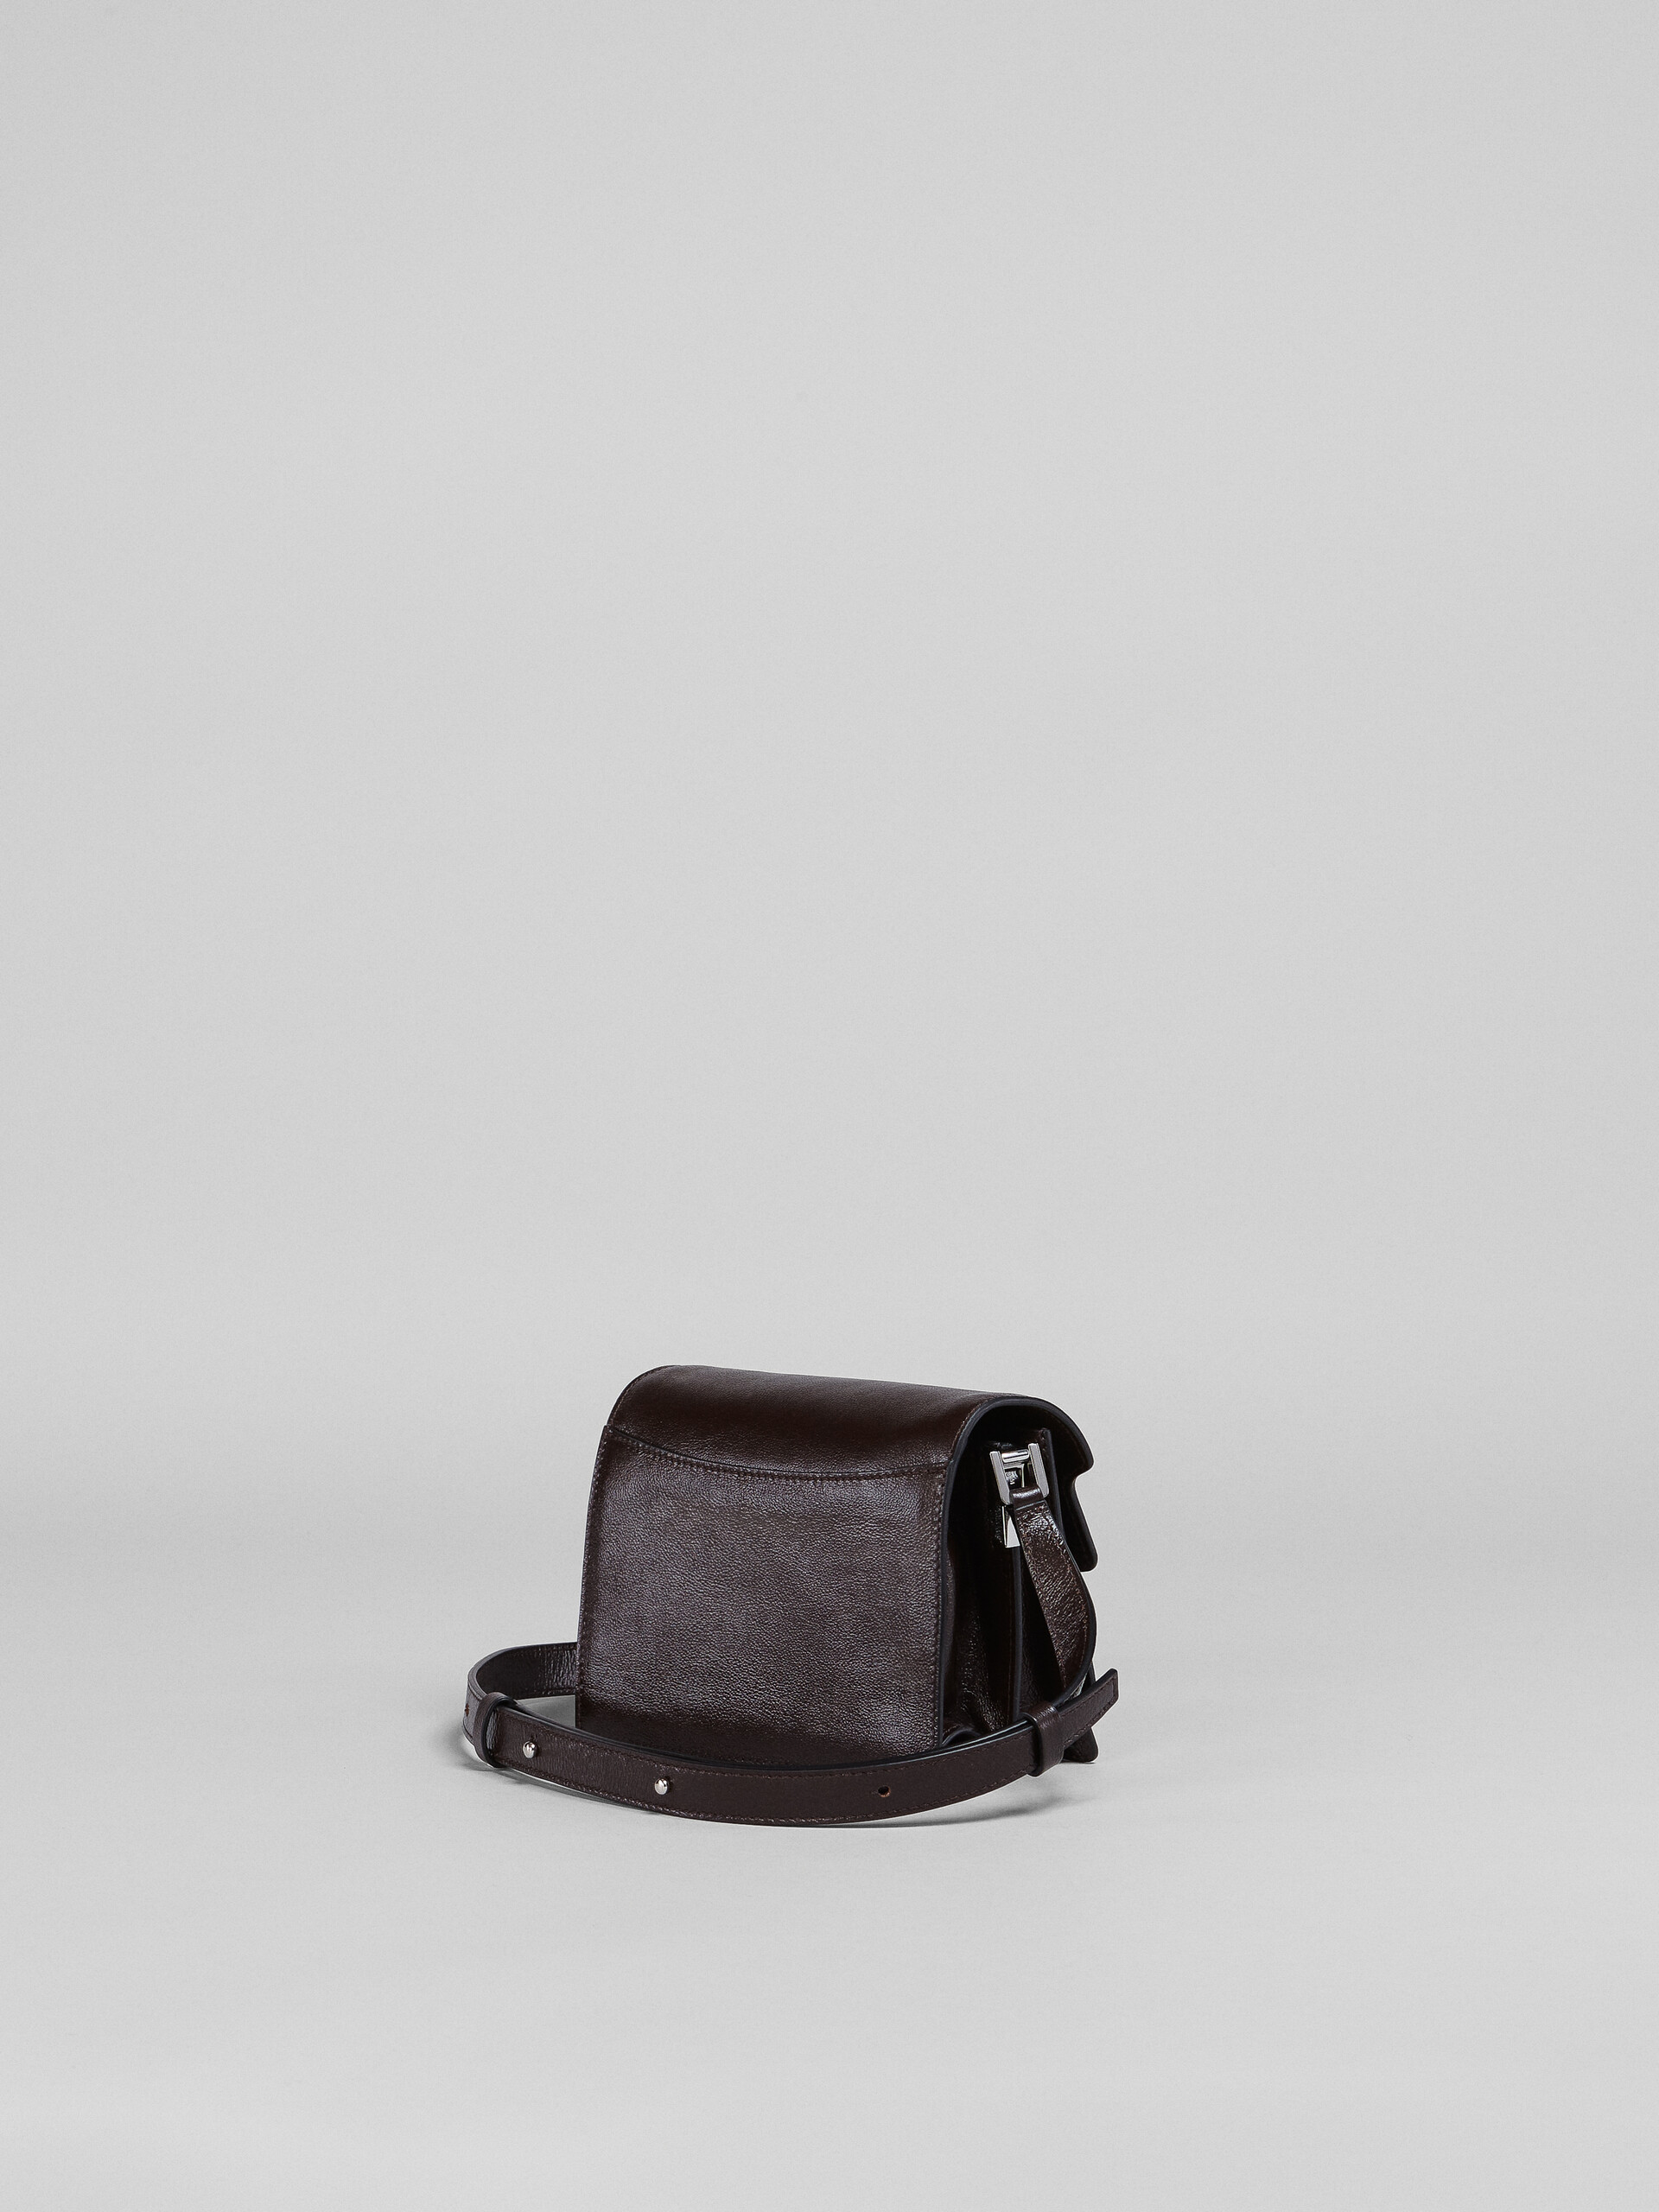 TRUNK SOFT bag mini in pelle marrone - Borse a spalla - Image 3